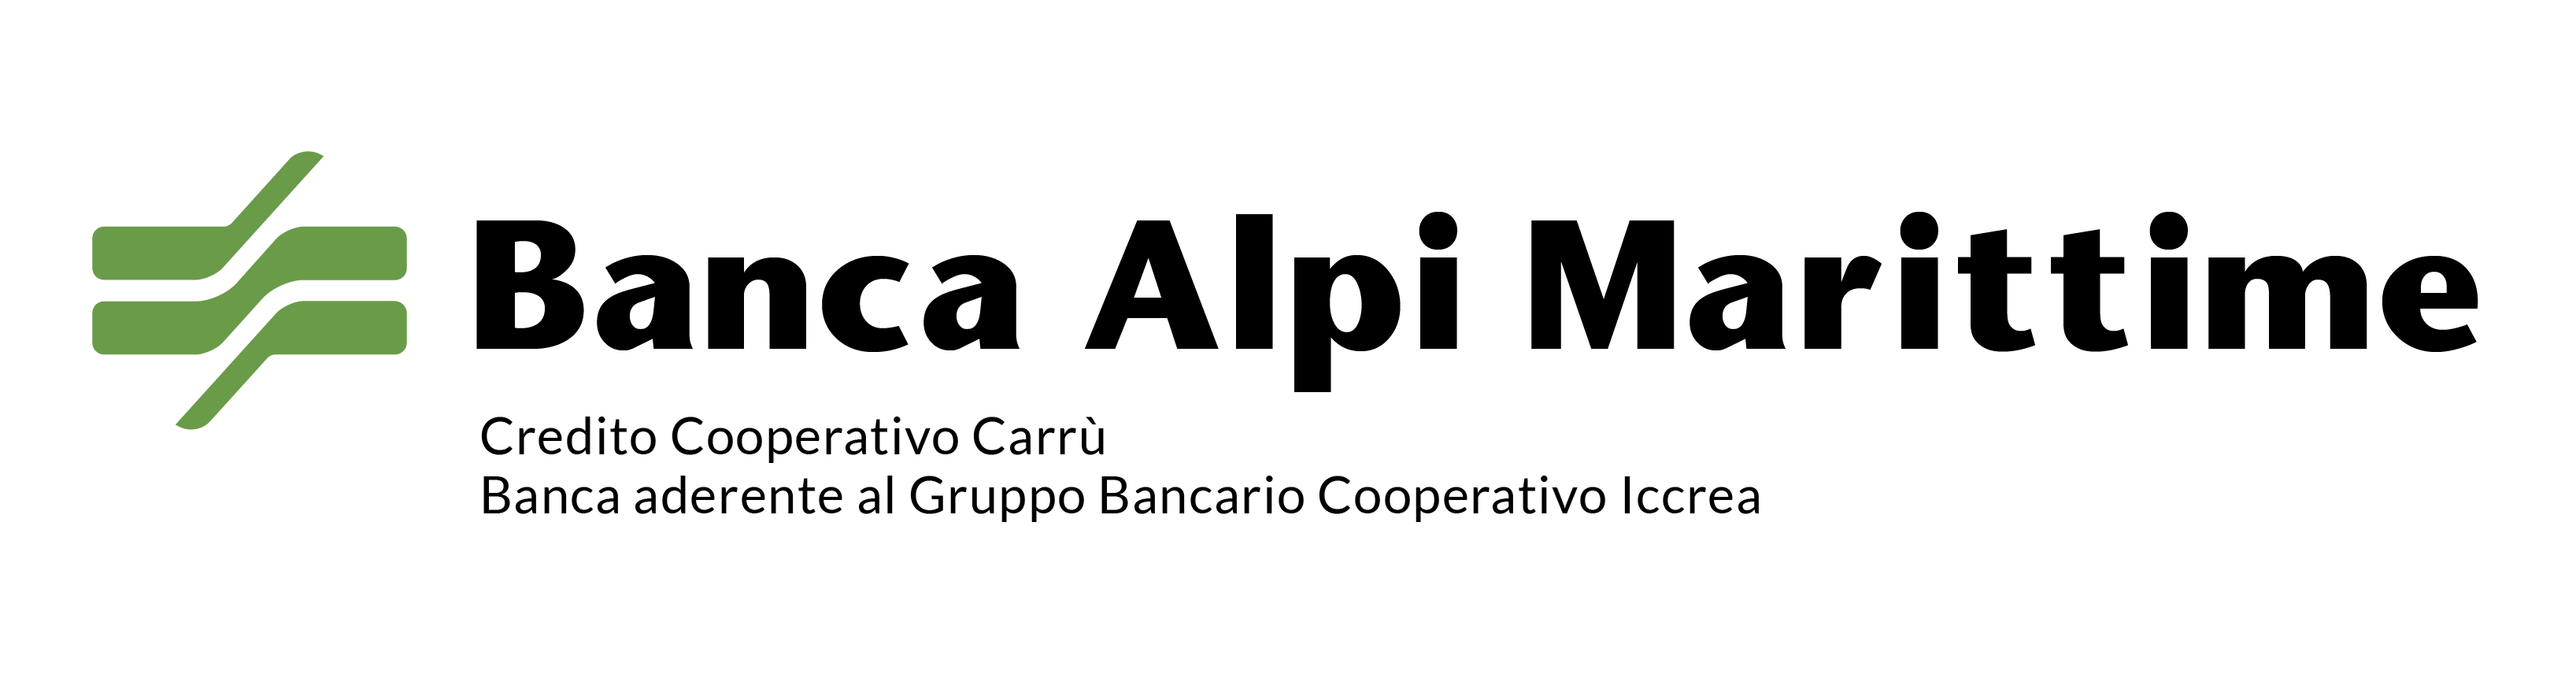 Logo Banca Alpi Marittime Credito Cooperativo Carru S.c.p.A.